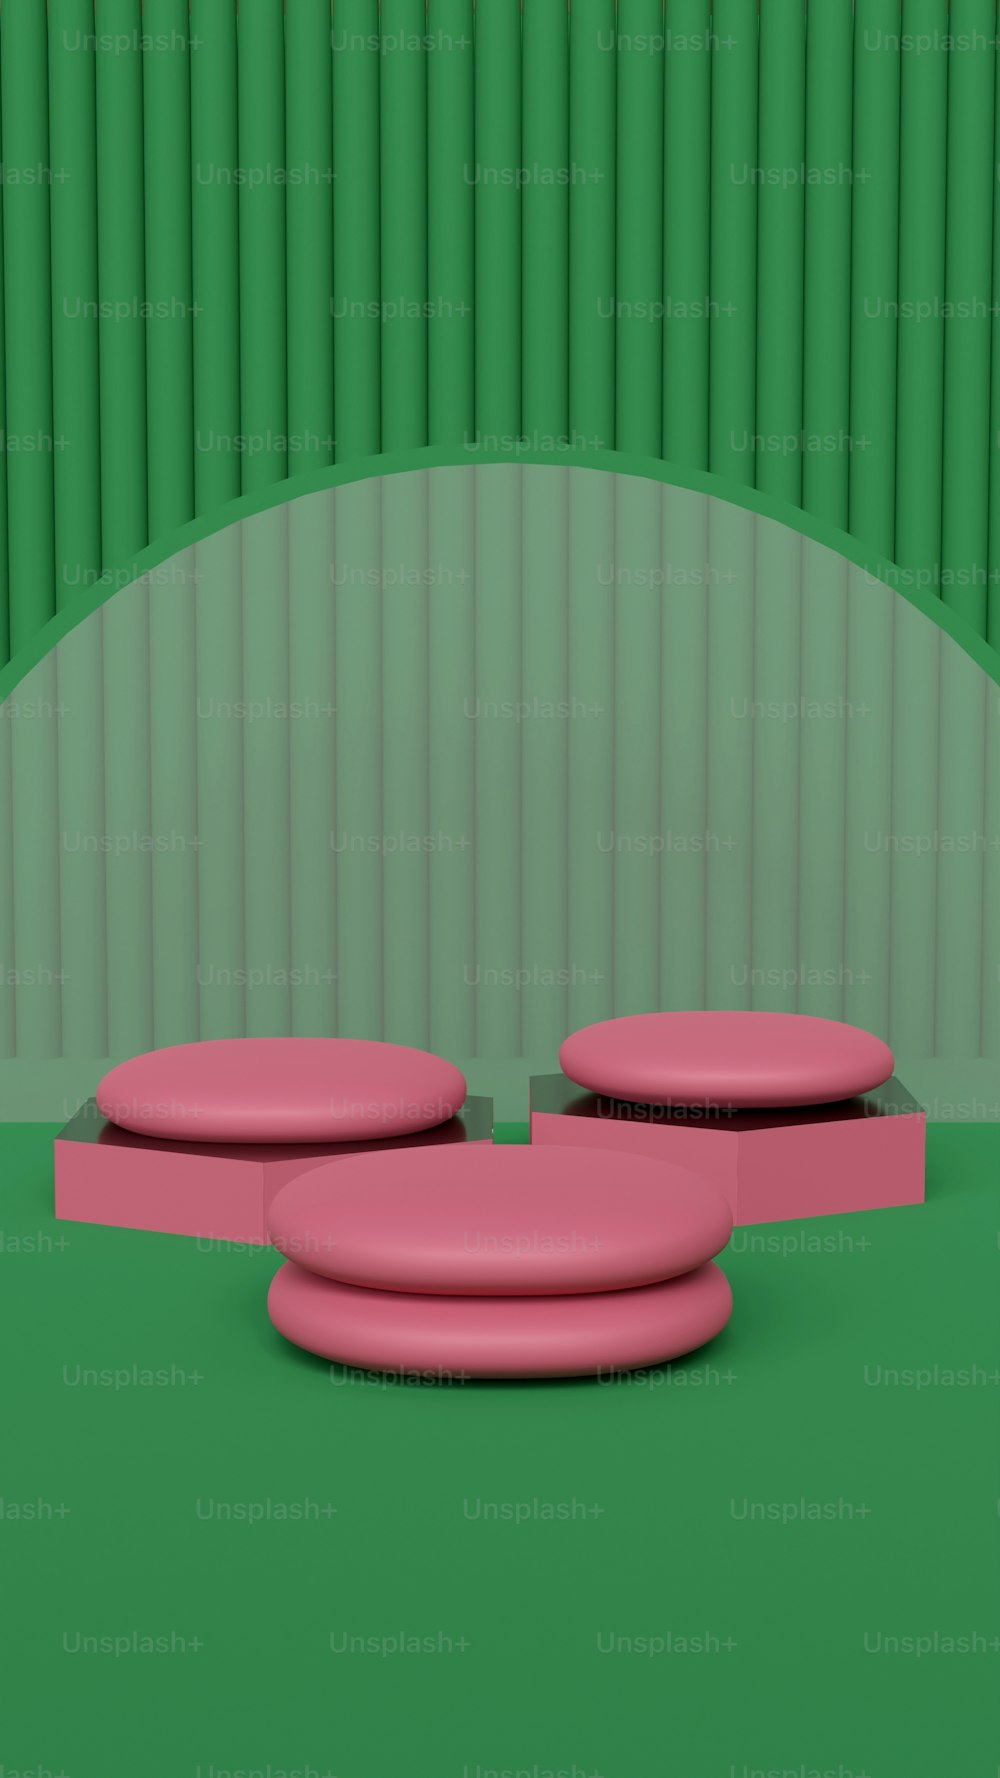 un objet rose assis sur un sol vert